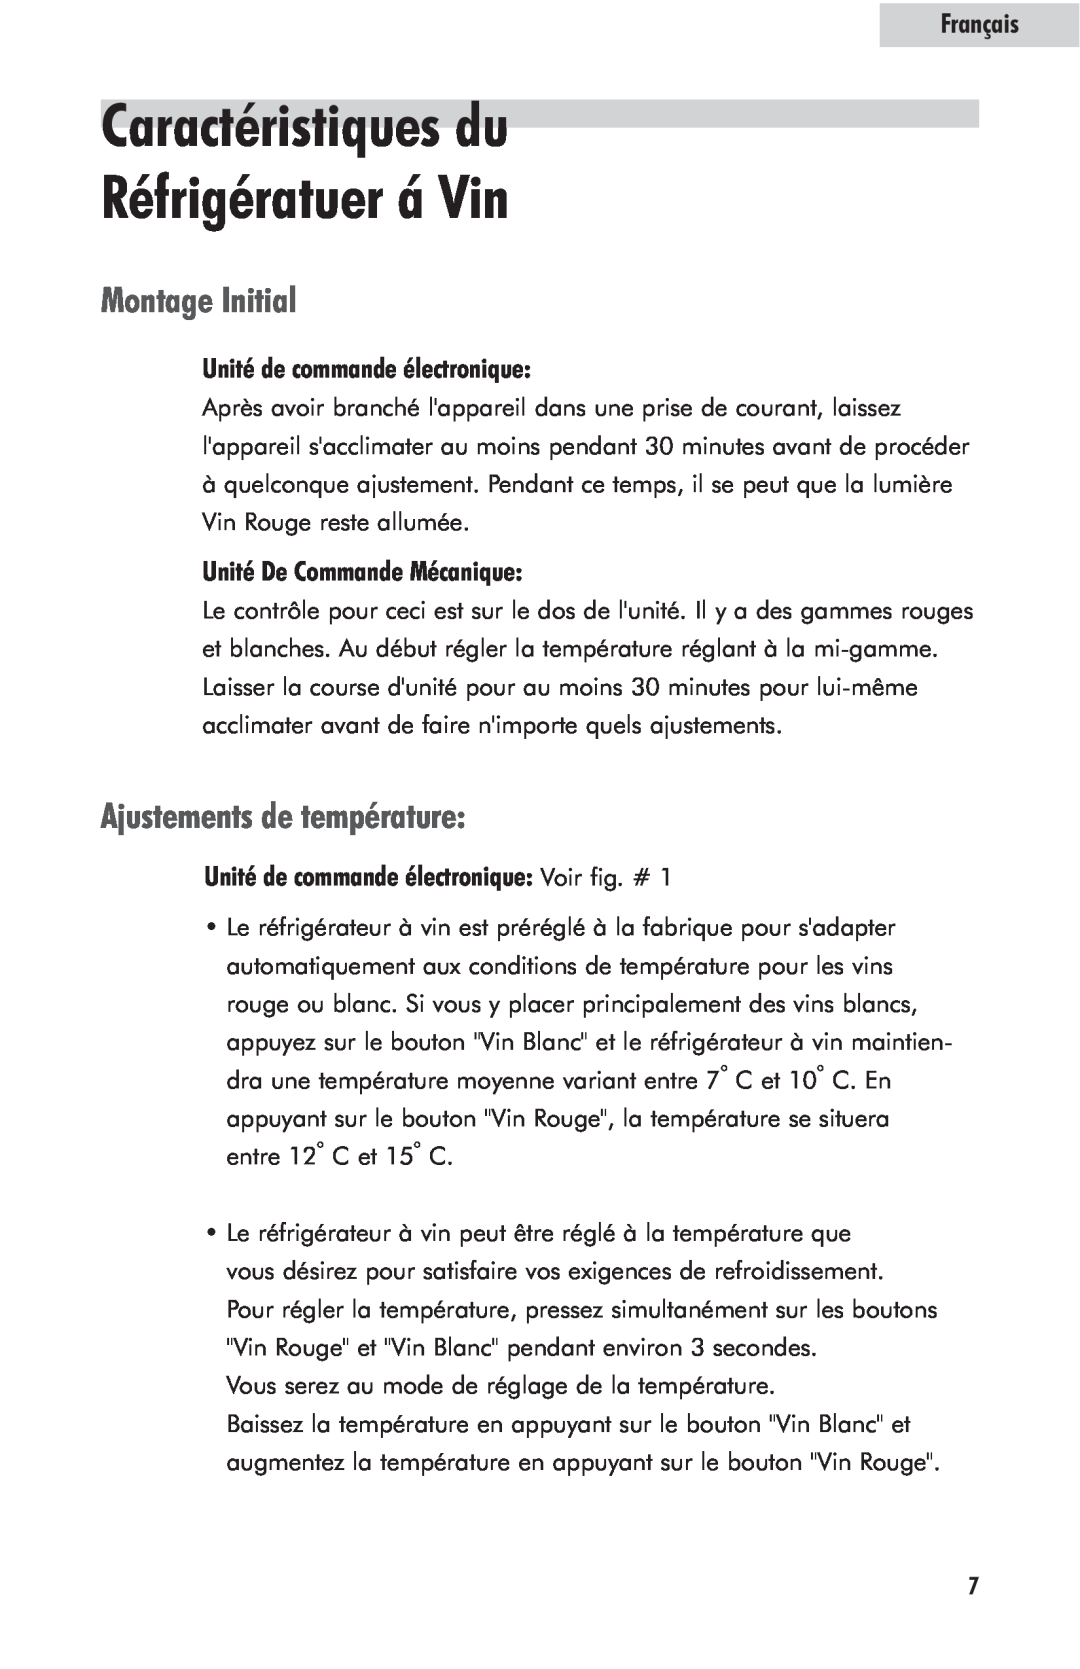 Haier HVFM24B user manual Caractéristiques du Réfrigératuer á Vin, Montage Initial, Ajustements de température, Français 